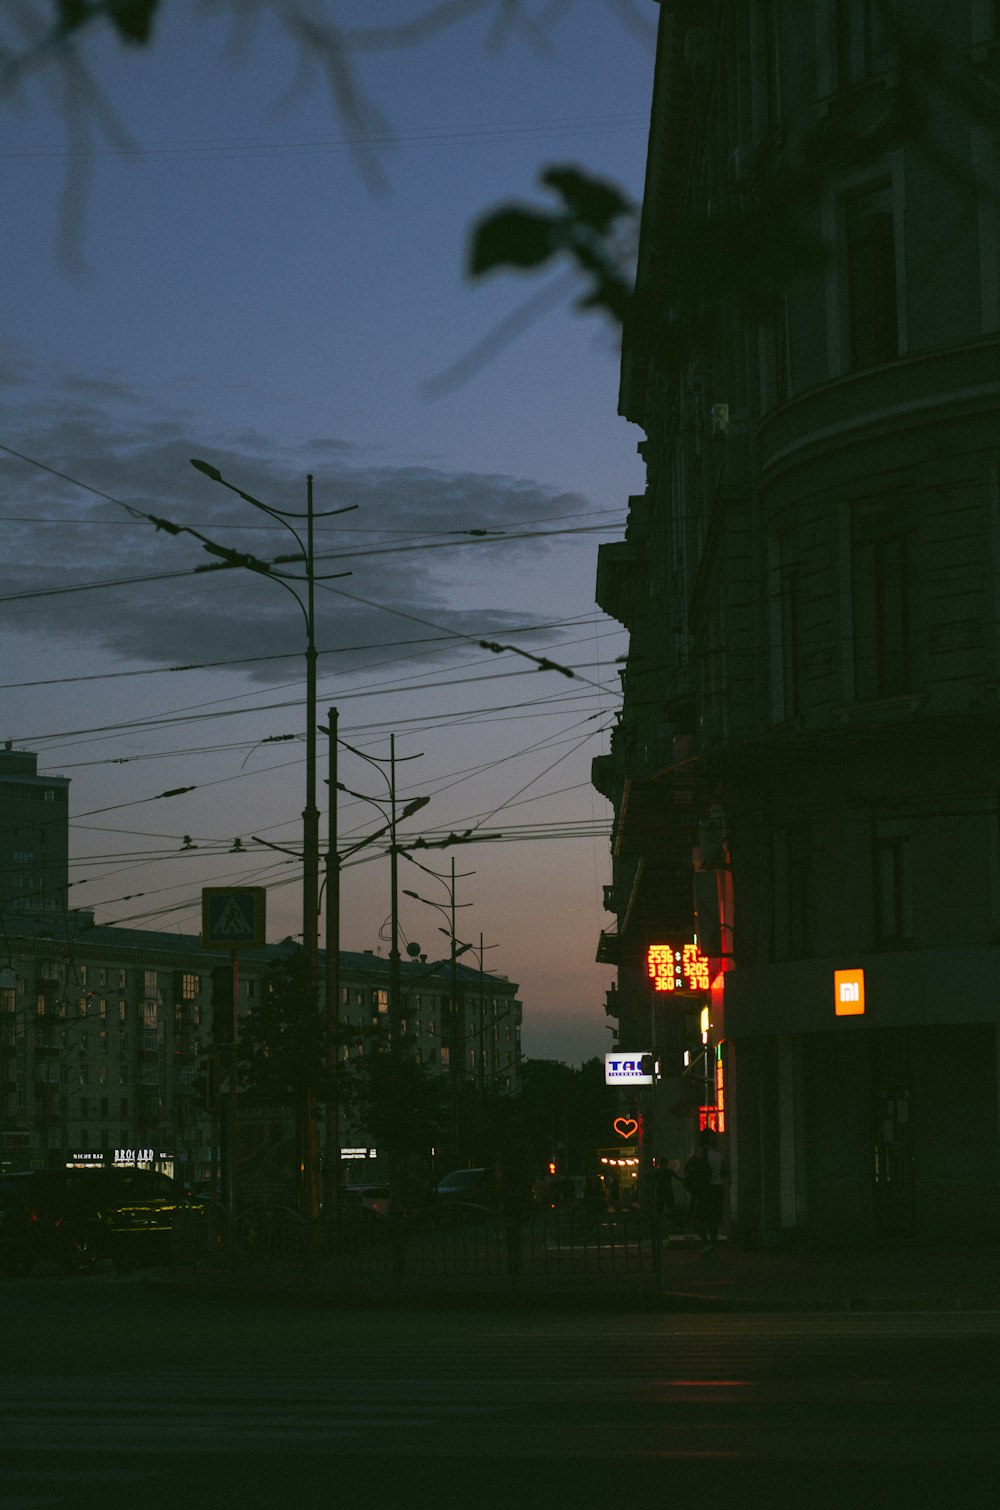 Eine Stadtstraße bei Nacht mit einer Ampel